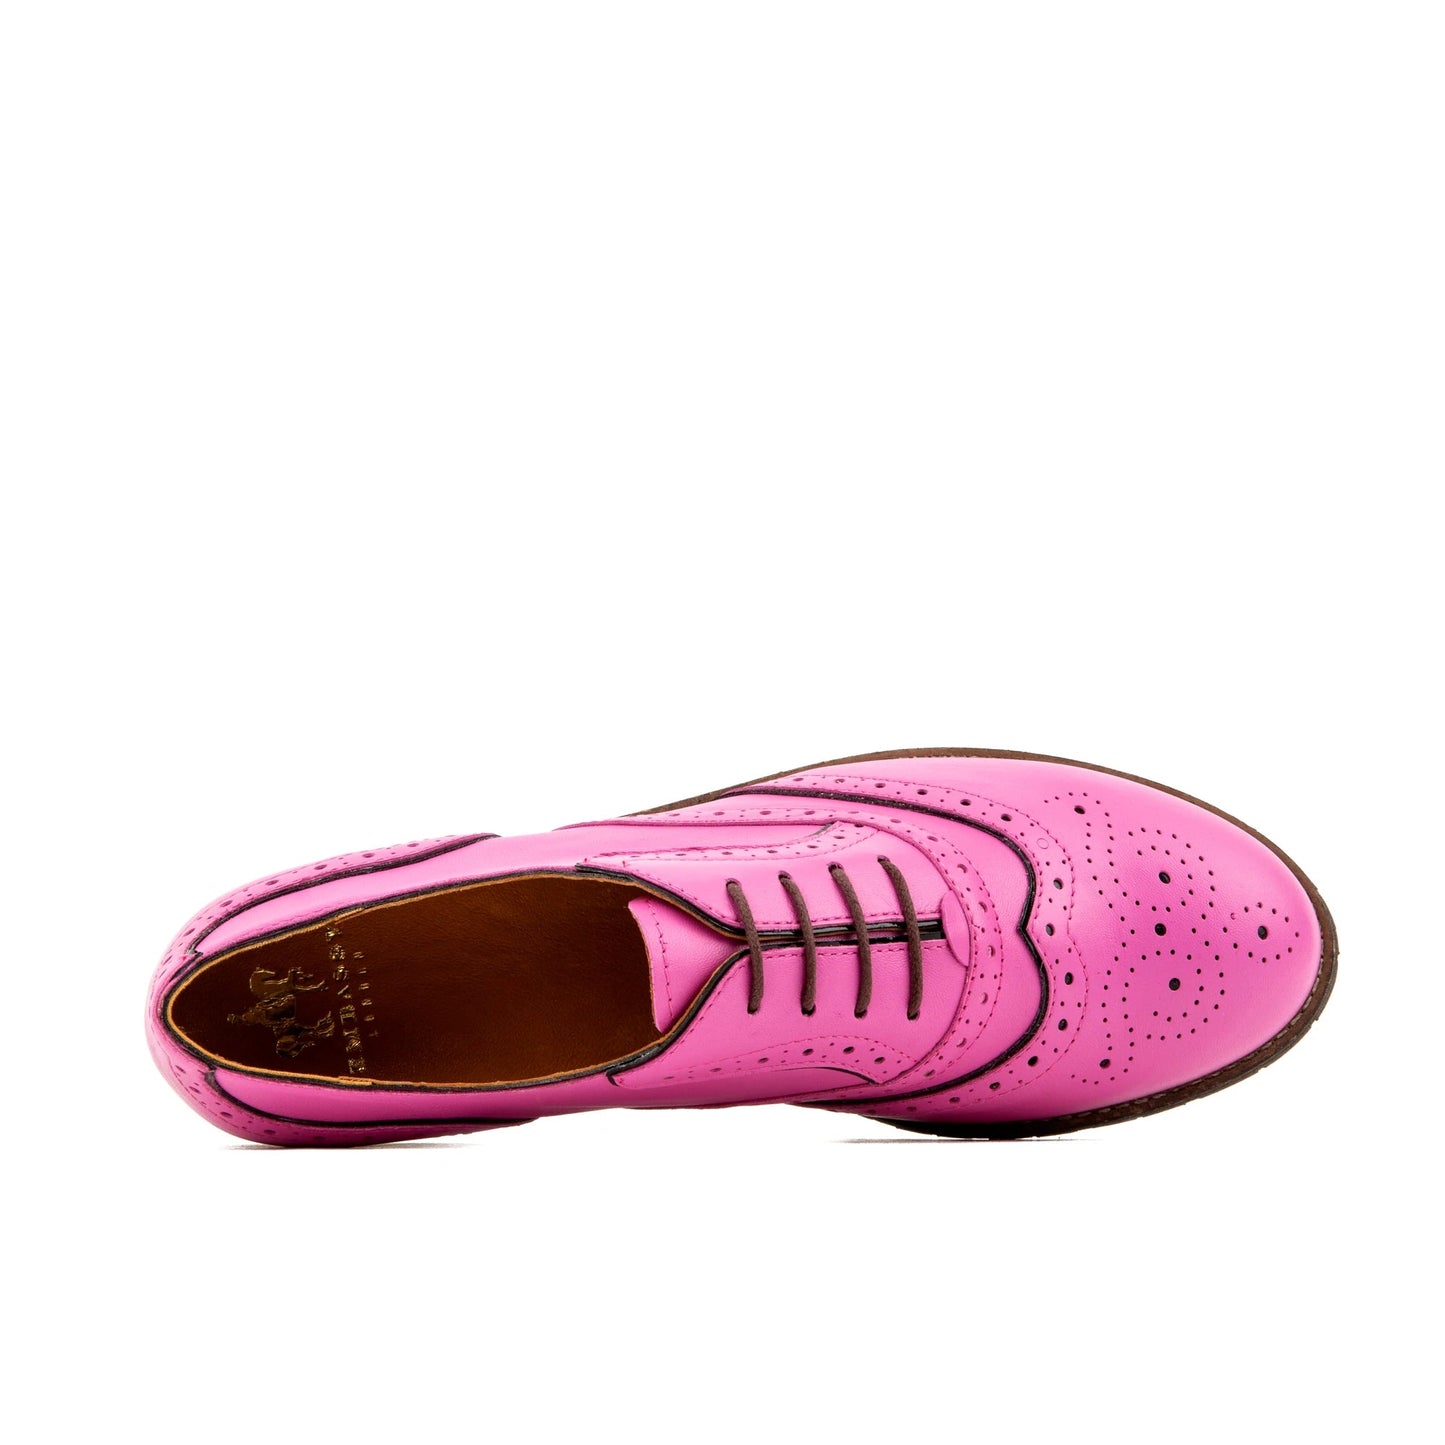 Brick Lane - Pink Shoes Embassy London 